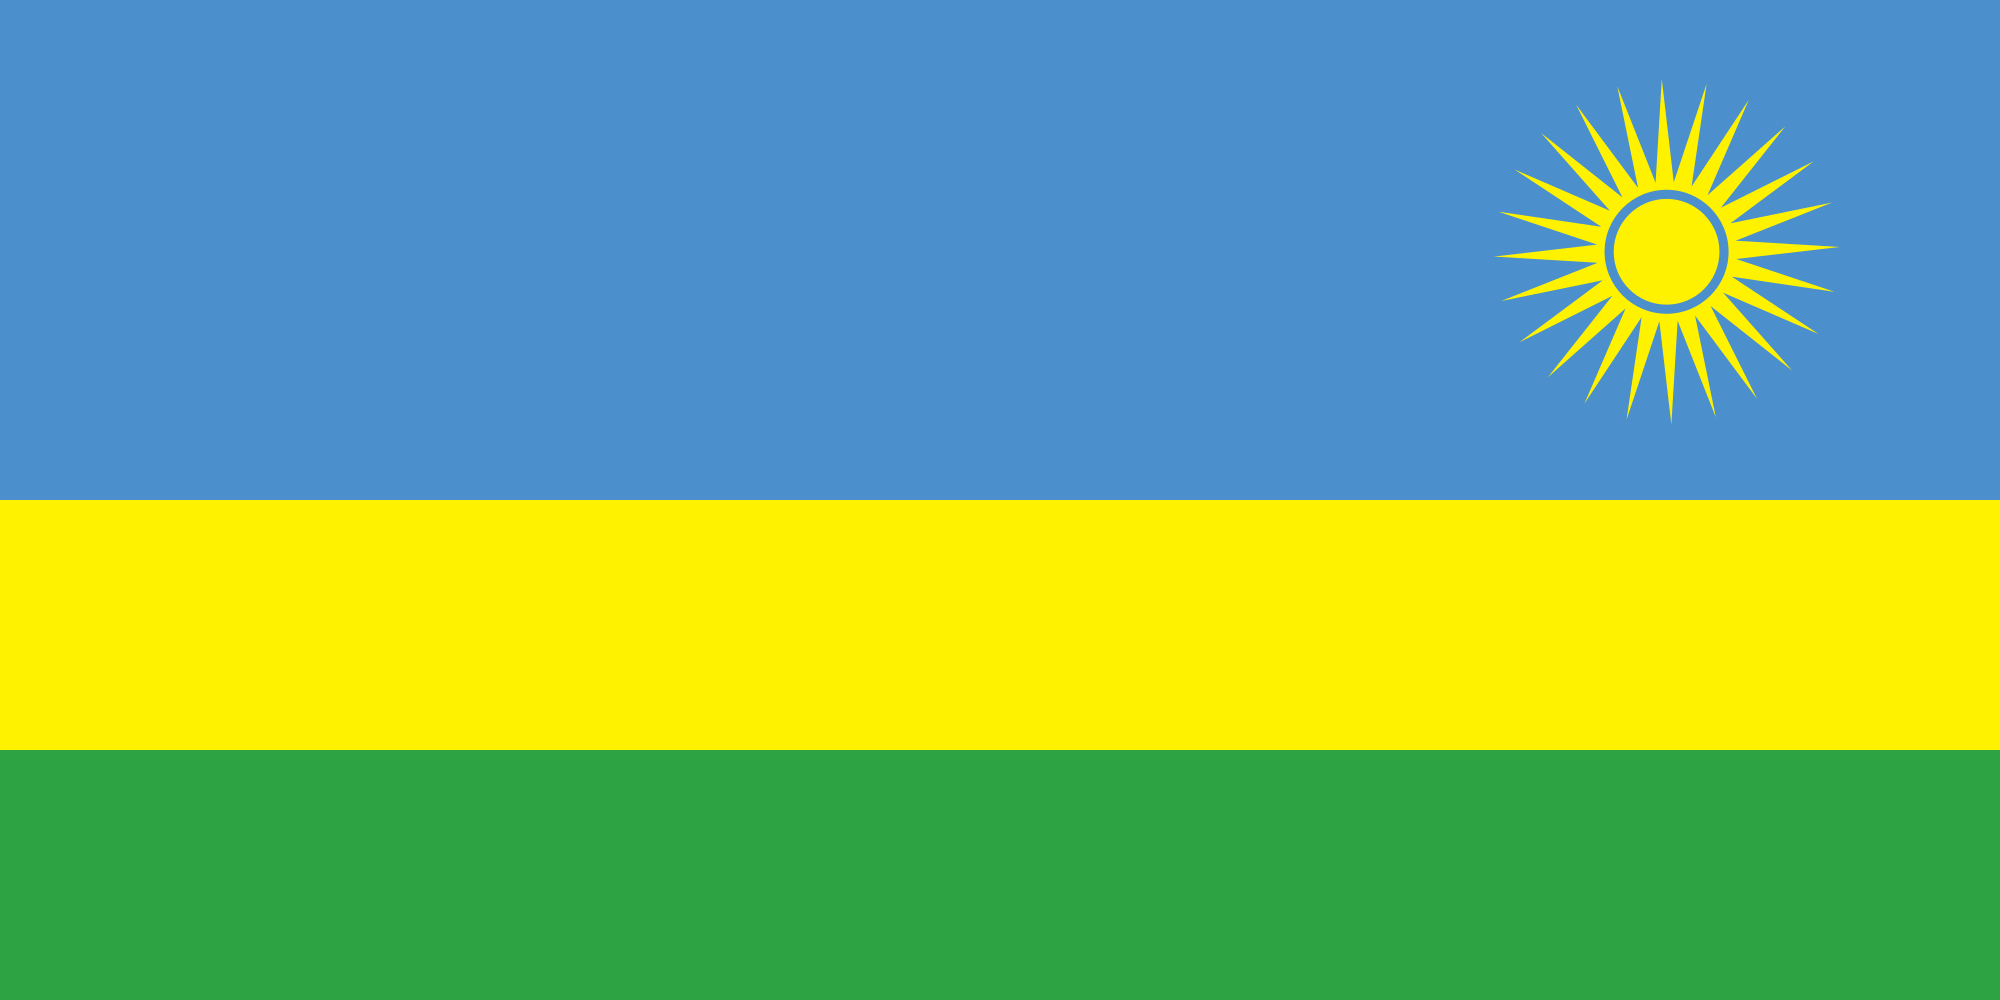 Желто зелено синий флаг страна. Флаг зеленый желтый синий. Флаг Руанды до 2001. Желто сине зелёный Флан. Голубой желтый зеленый флаг какой страны.